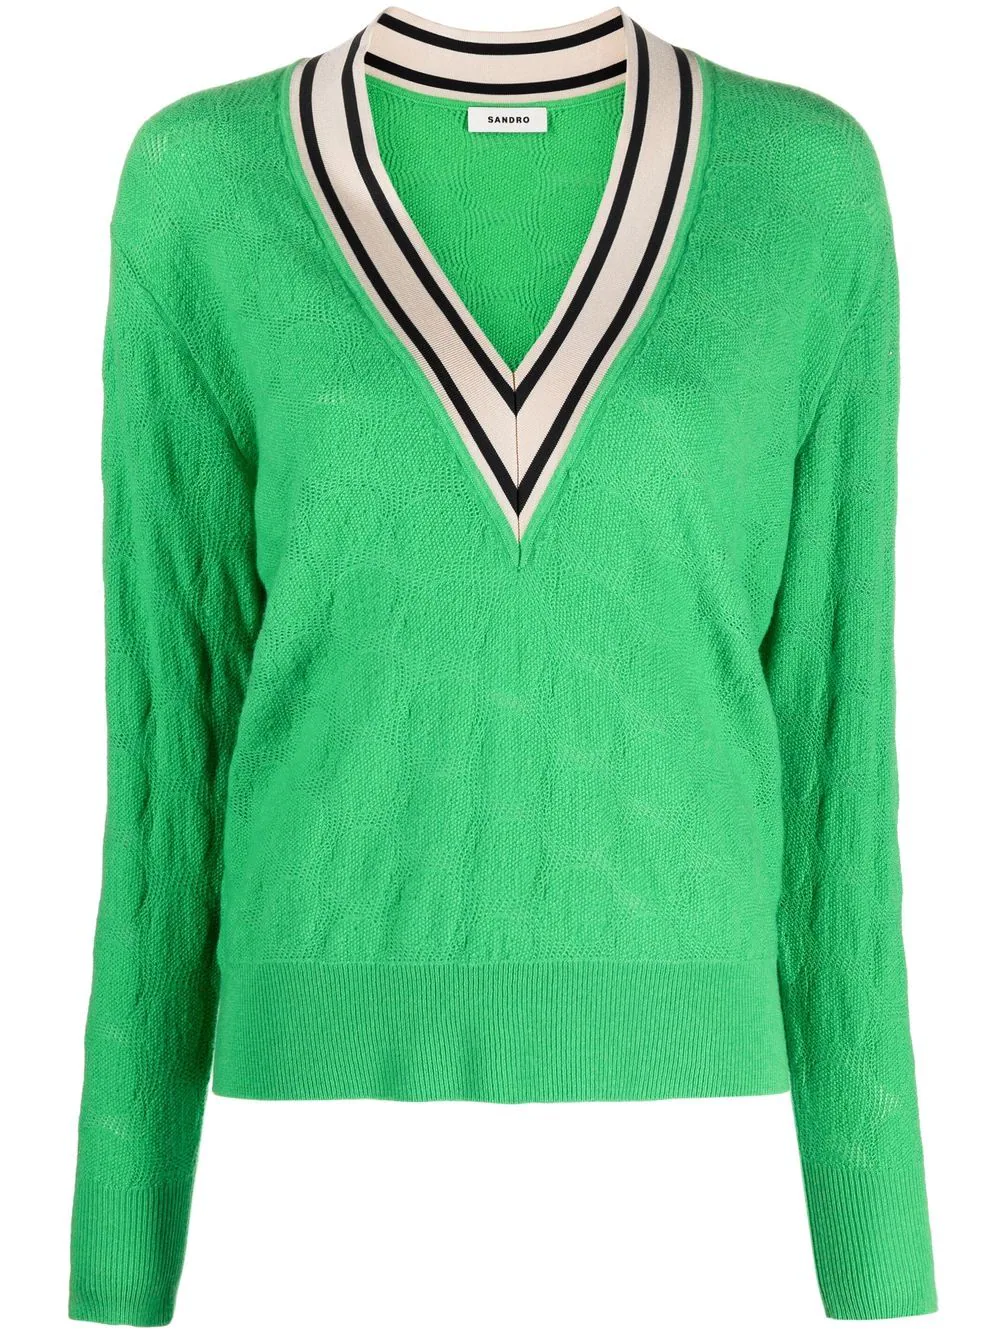 Margaret Josephs' Green Sweater